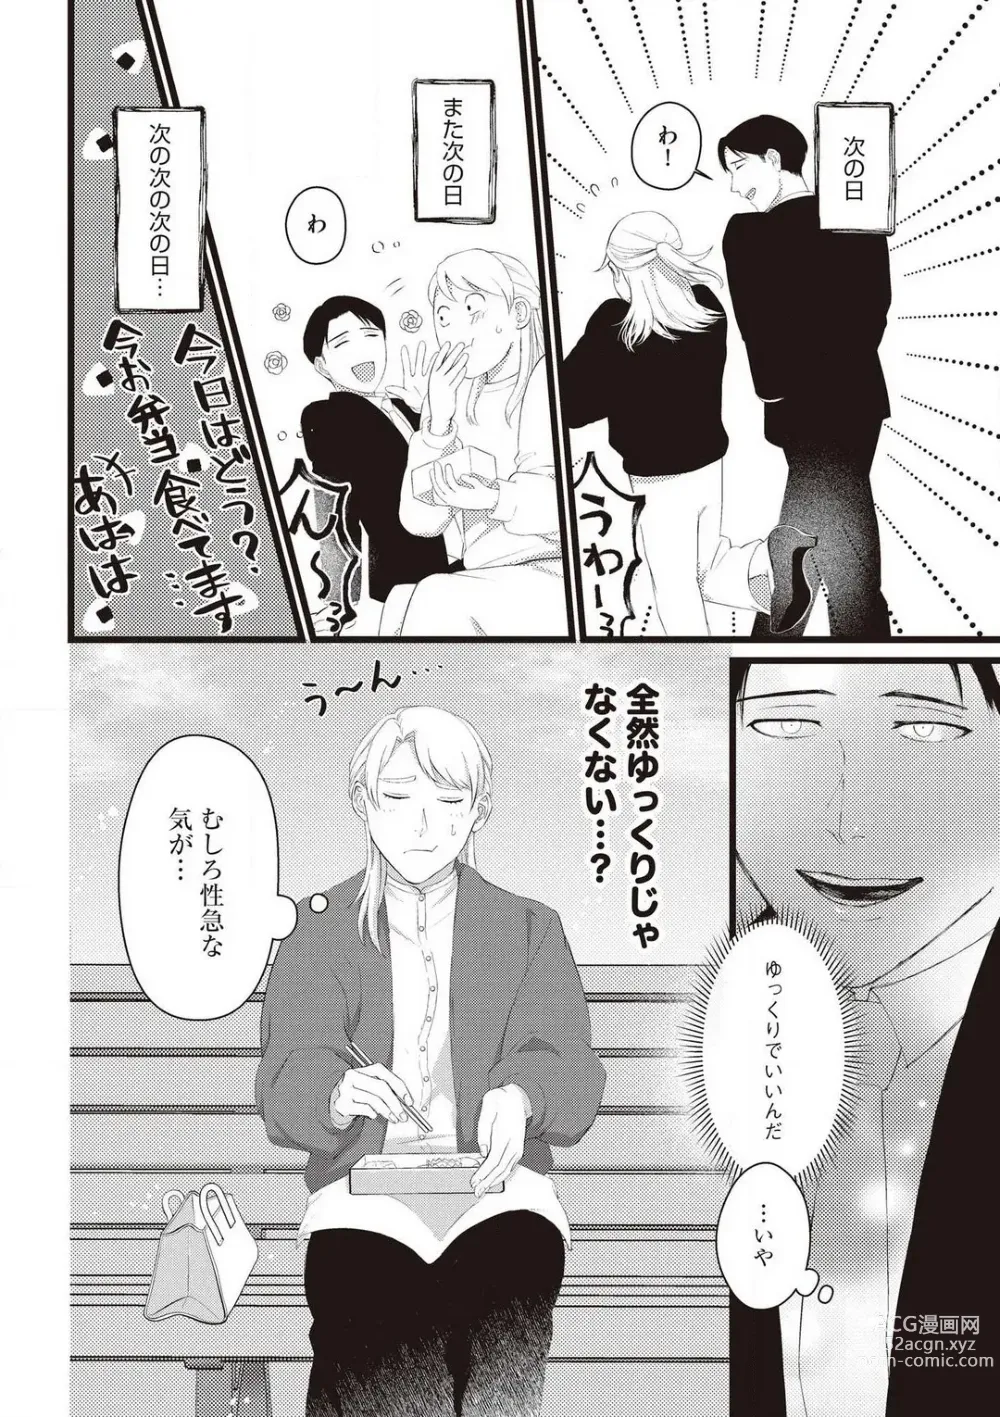 Page 14 of manga Hatsukoi Osananajimi no Ai no Moukou Nogarerarenai Saikai H